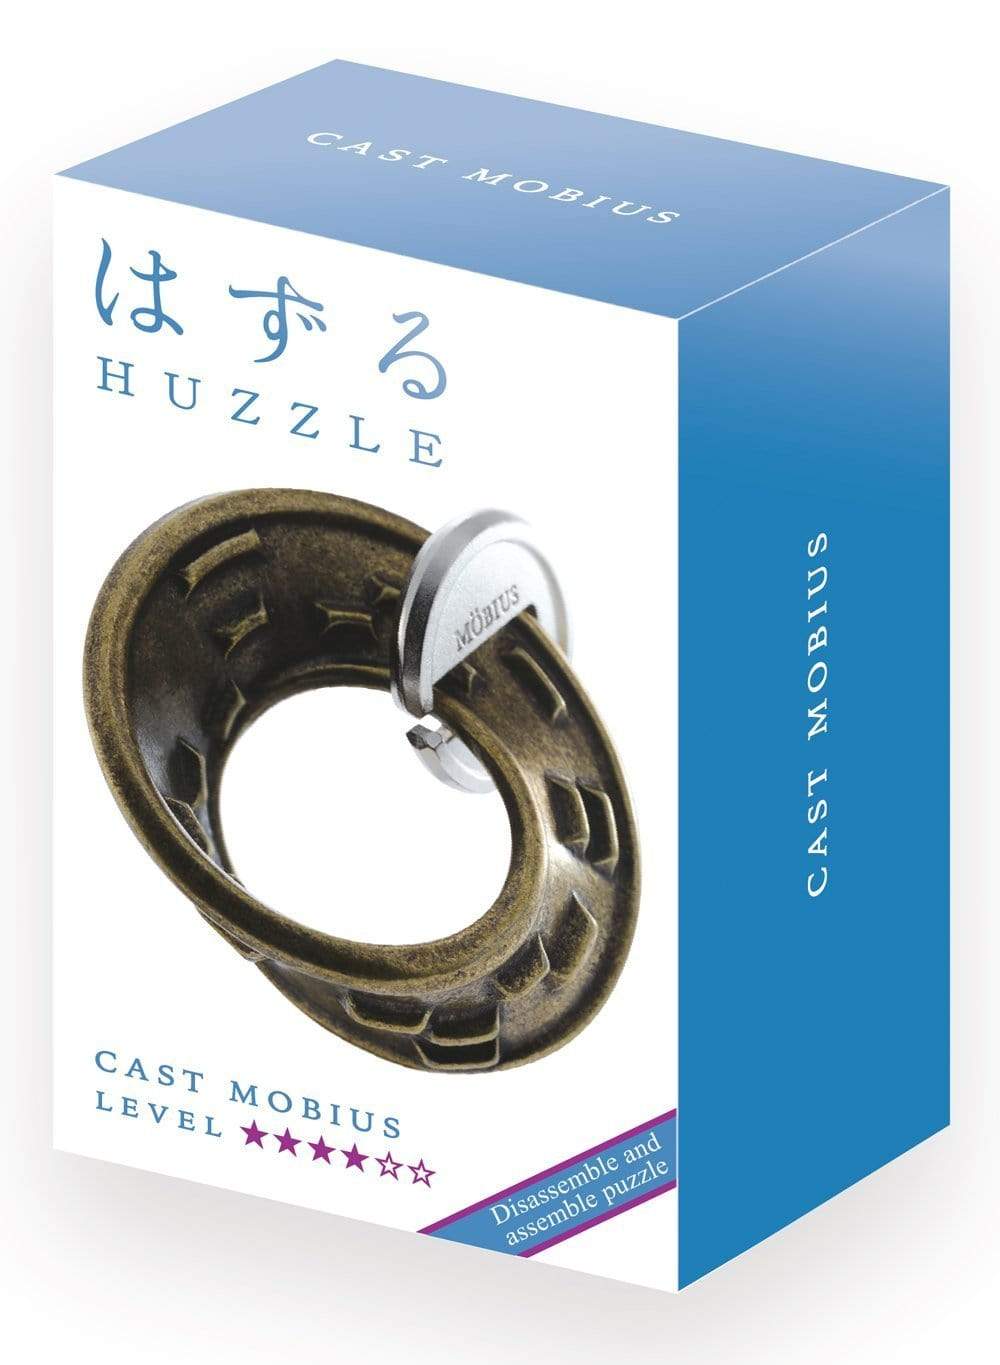 Huzzle Puzzle Hanayama Huzzle Cast Puzzle Mobius - LEVEL 4